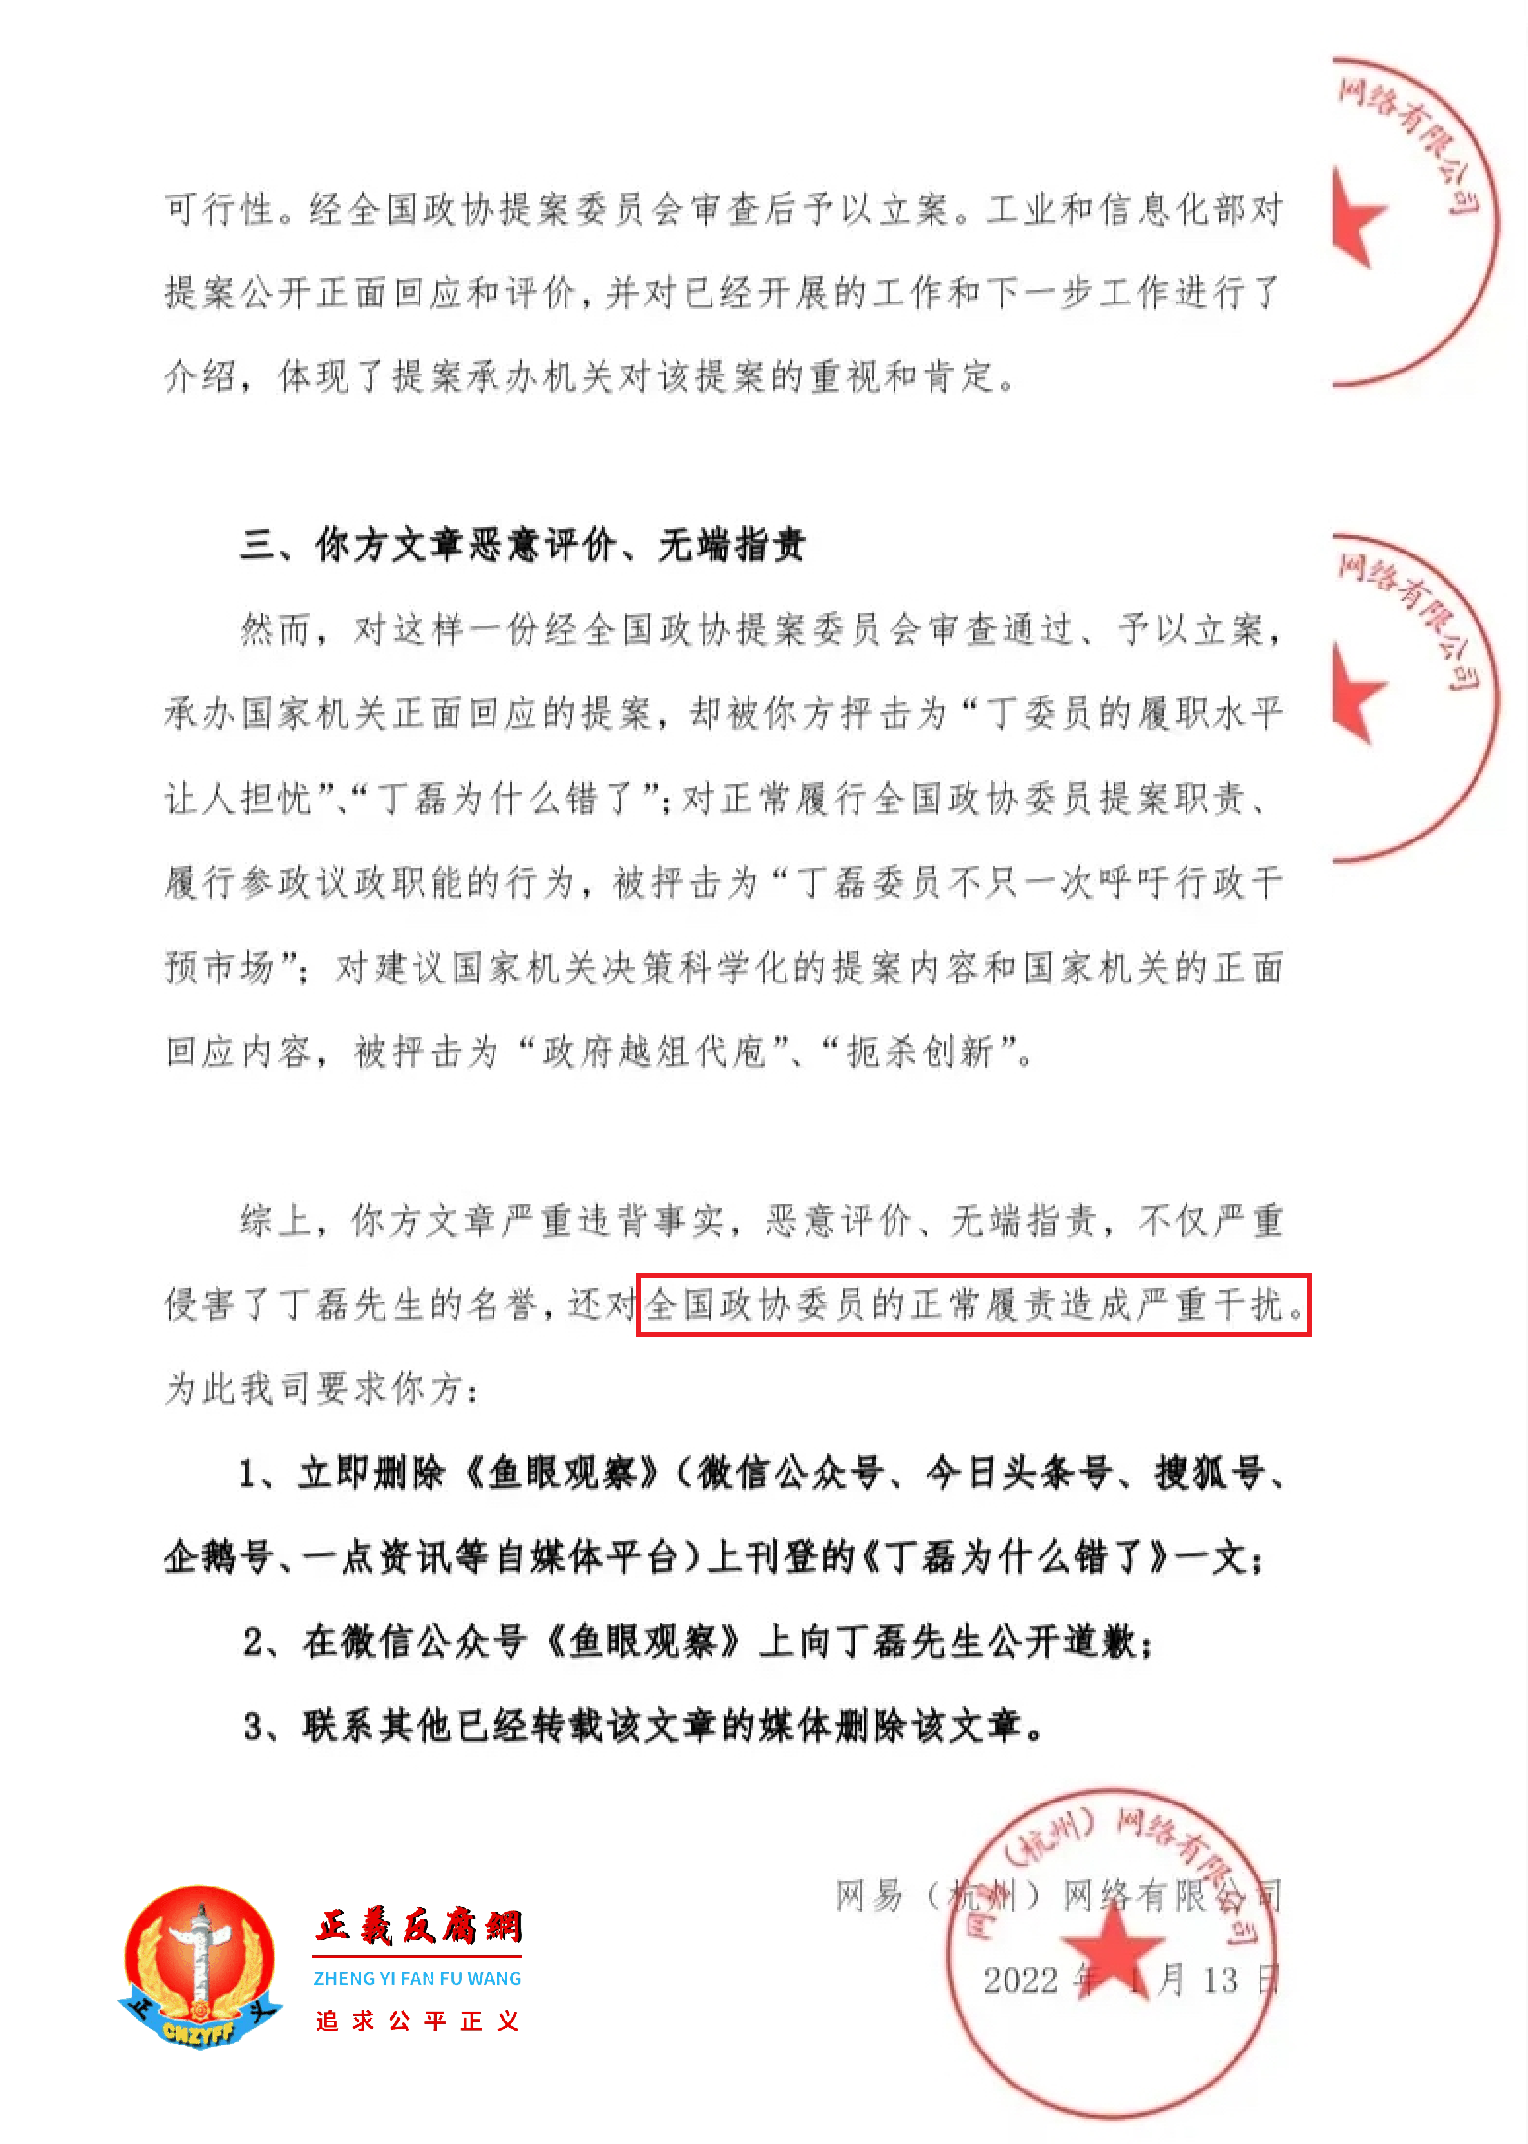 2022年1月13日，网易(杭州)网络有限公司发了一份《关于要求立即删除诋毁政协委员正常履职之文章的法律函》..png